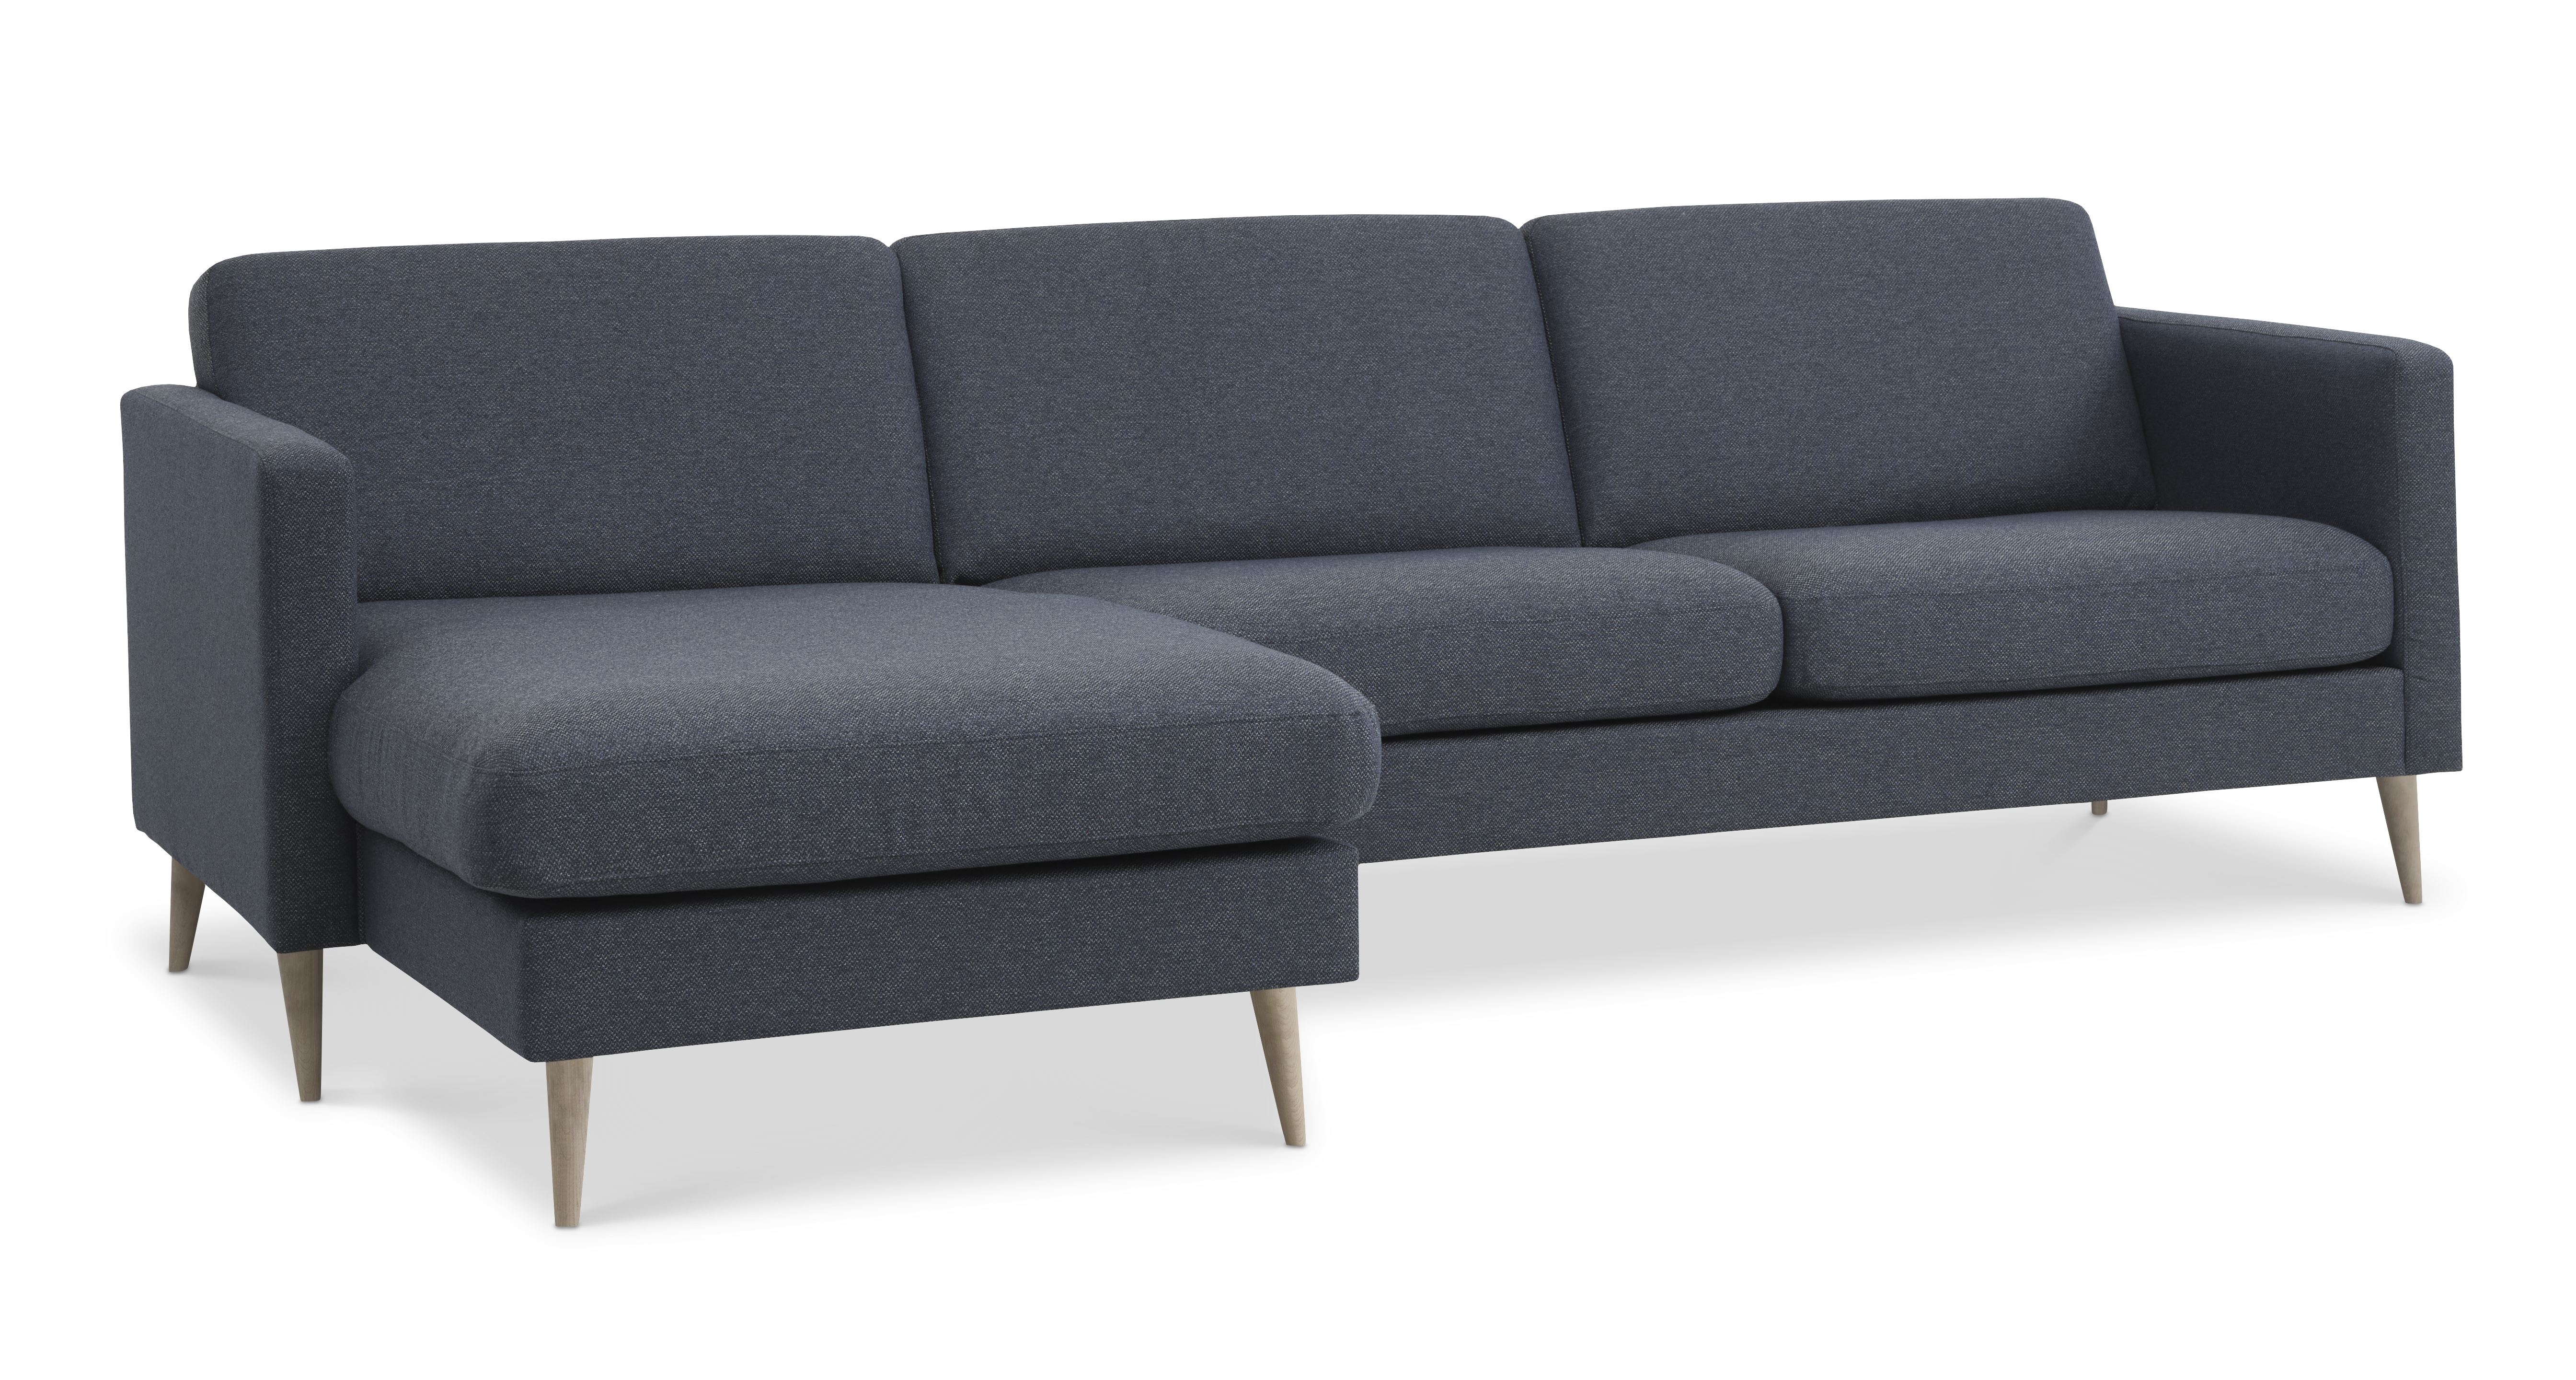 Billede af Ask sæt 51 3D sofa, m. chaiselong - navy blå polyester stof og natur træ